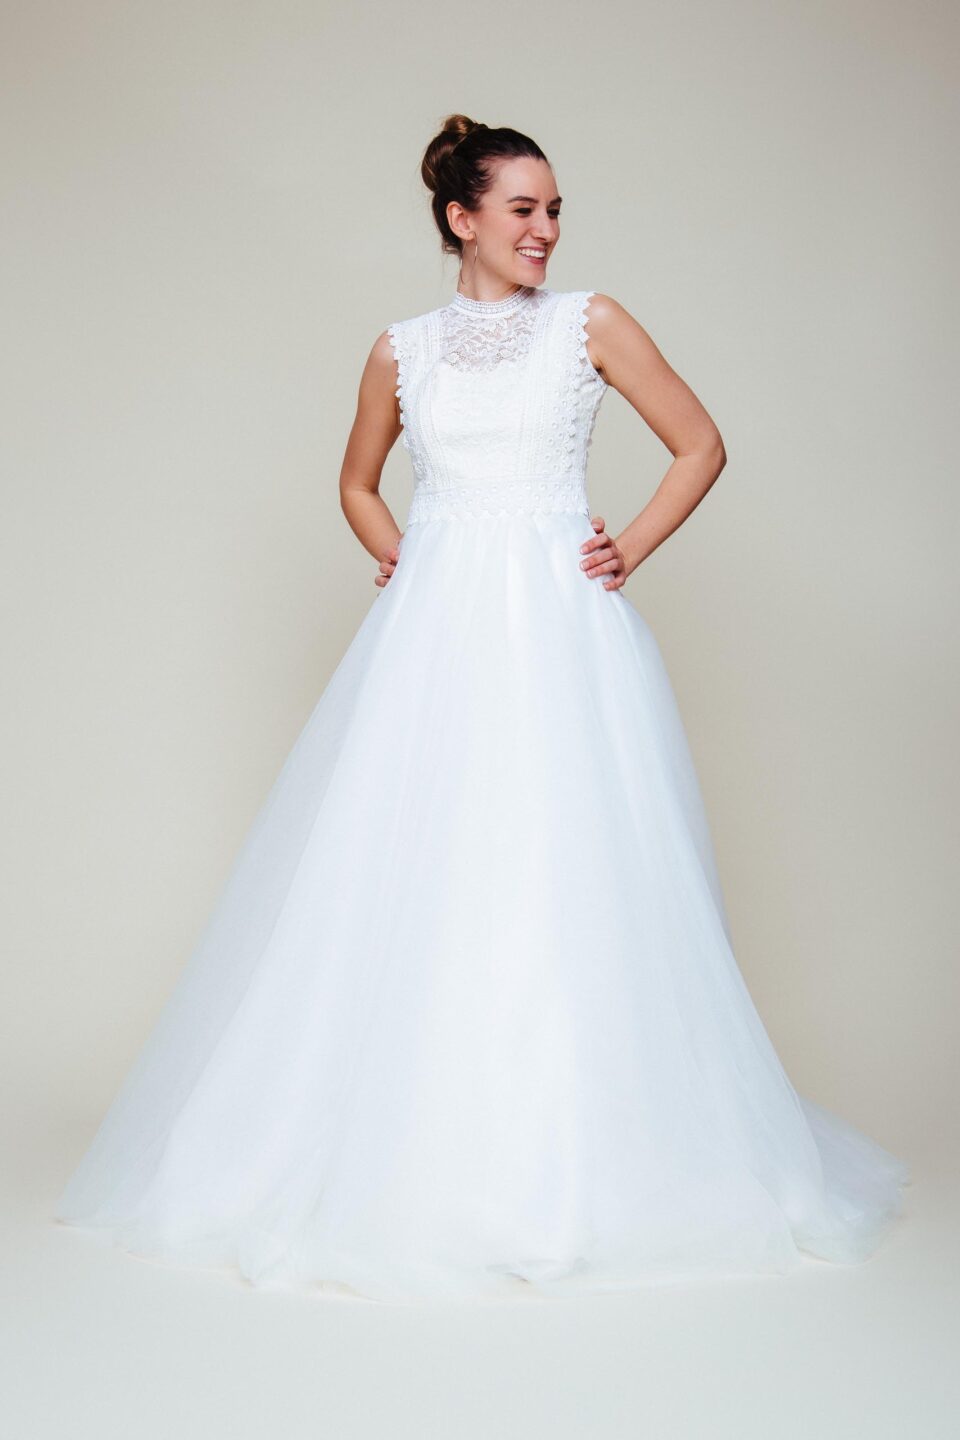 Tüllrock Hochzeitskleid mit Brauttop im Spitzenmix kombiniert